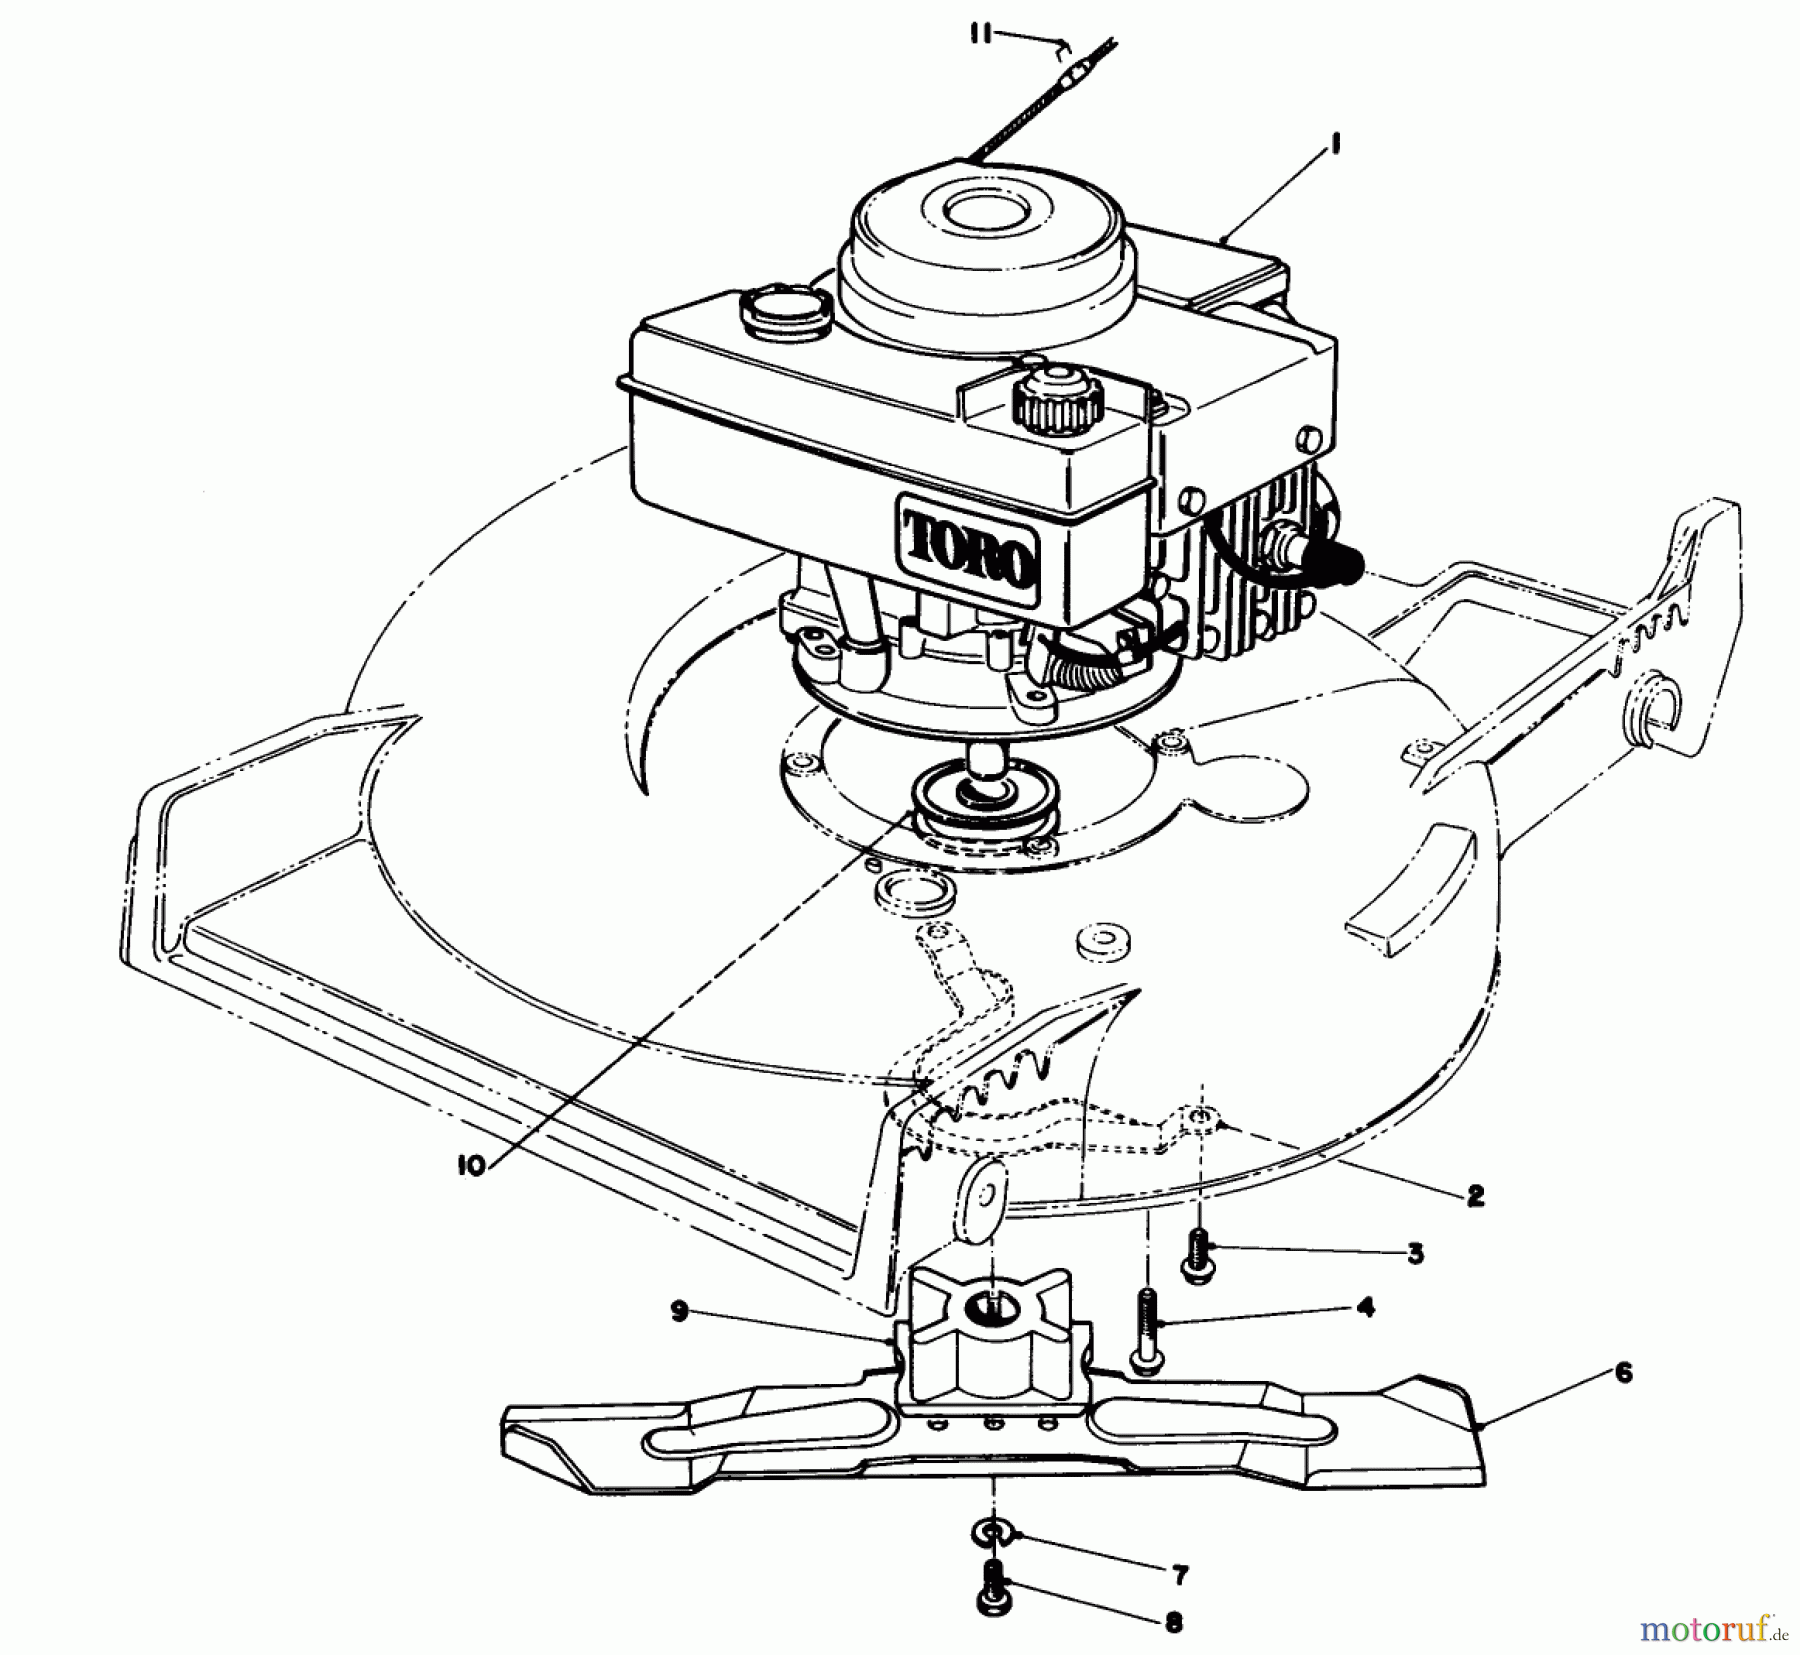  Toro Neu Mowers, Walk-Behind Seite 1 20692C - Toro Lawnmower, 1988 (8000001-8999999) ENGINE ASSEMBLY